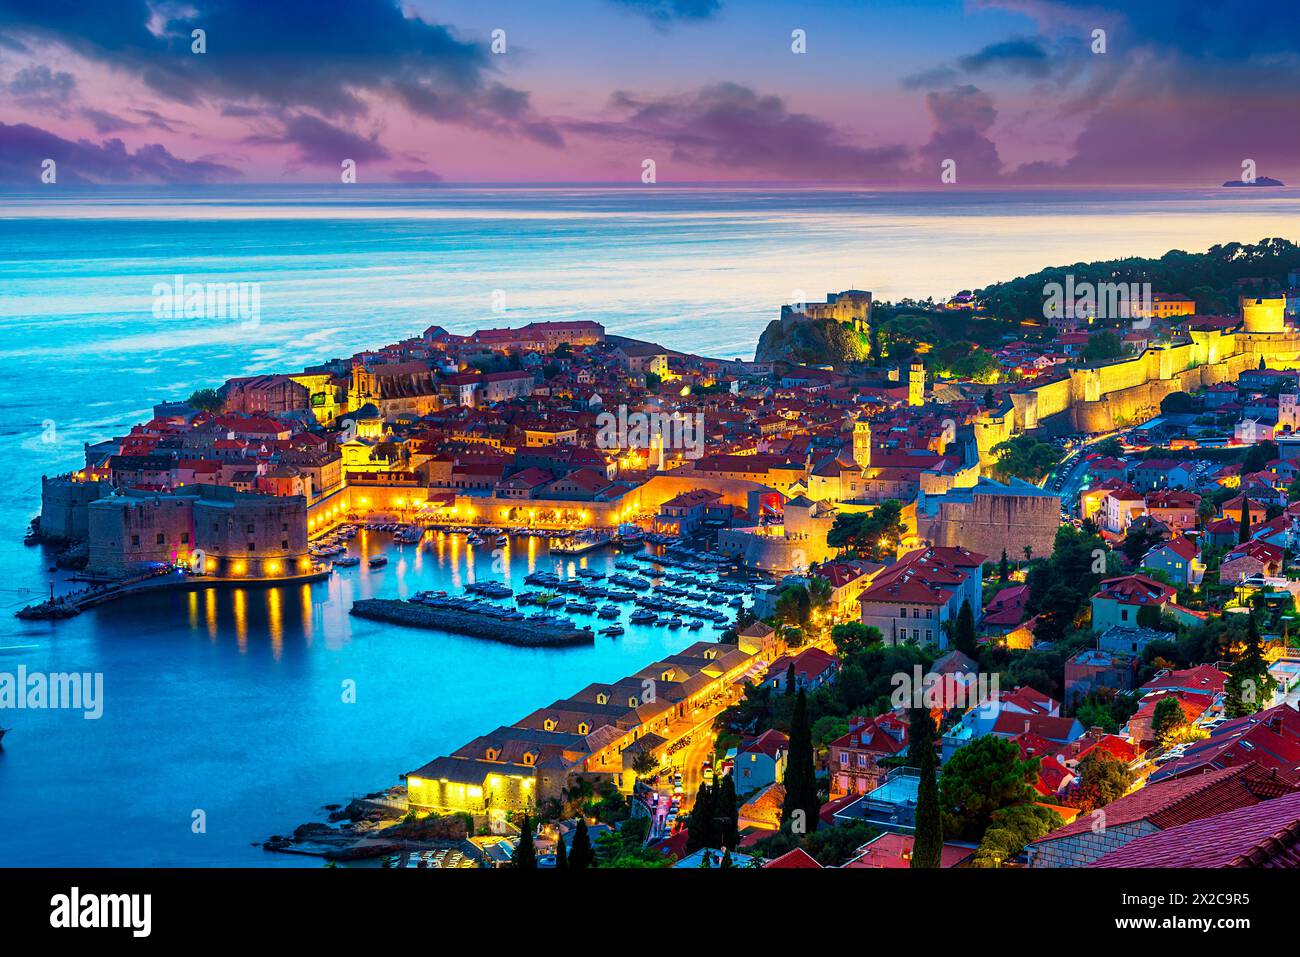 Dubrovnik, Croatie : coucher de soleil sur la vieille ville (Raguse médiévale) entourée de murs fortifiés au-dessus de la mer Adriatique et de la côte dalmate, Europe Banque D'Images